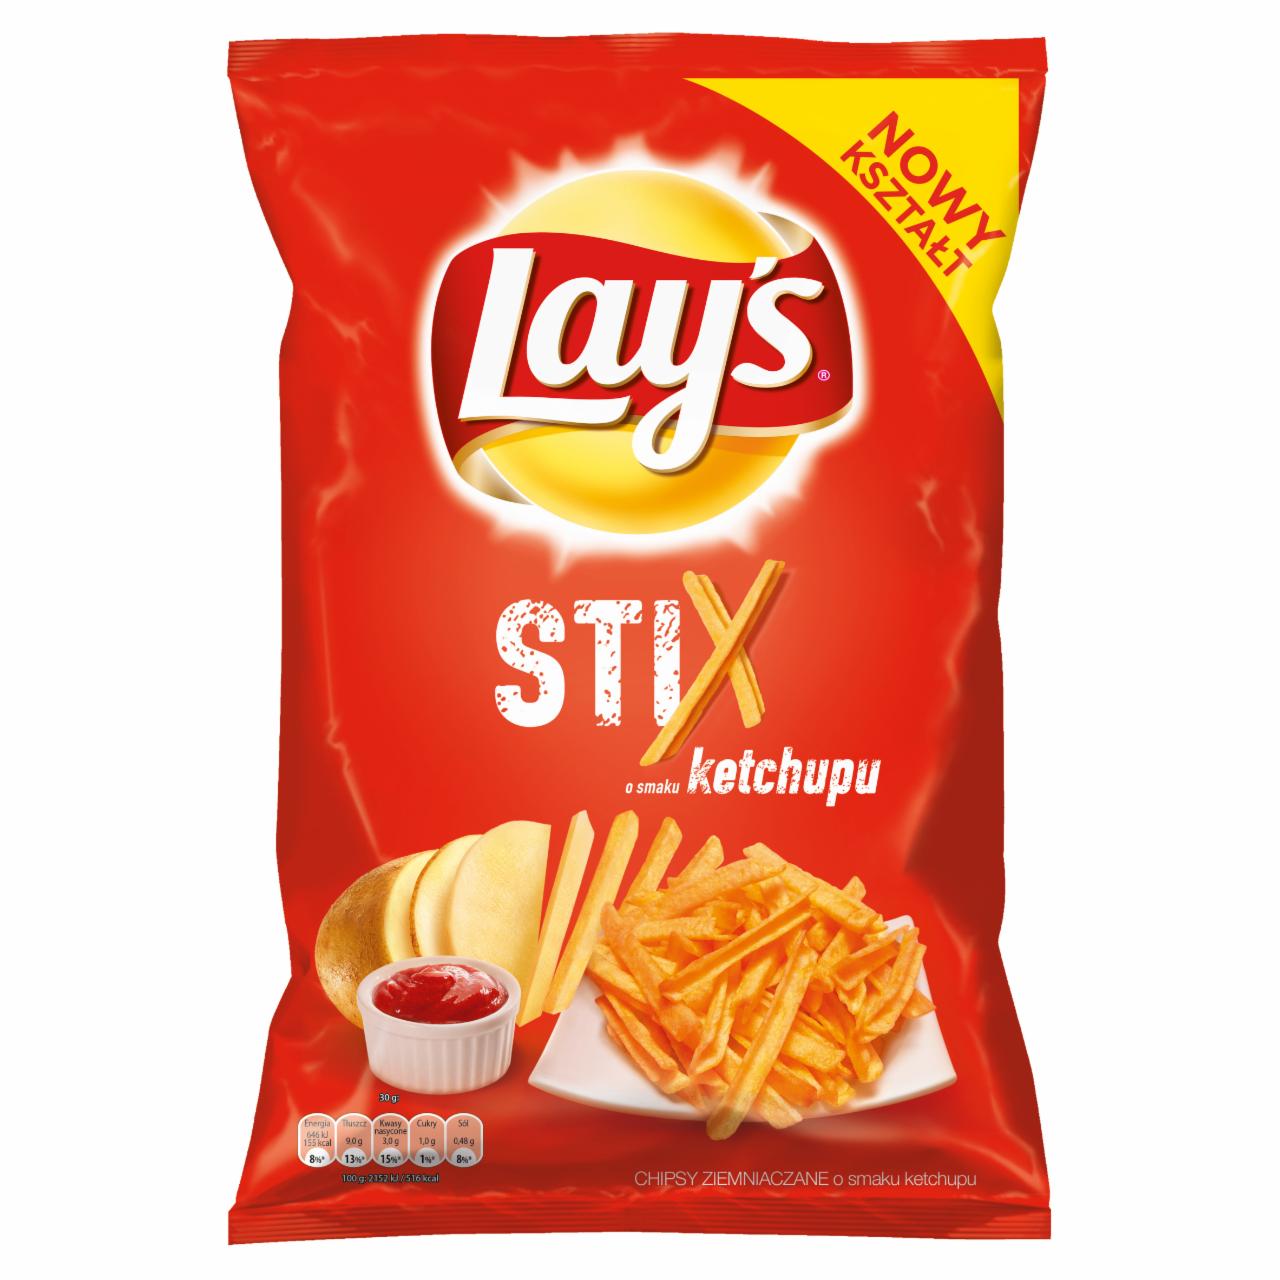 Zdjęcia - Stix o smaku ketchupu Chipsy ziemniaczane 140 g Lay's